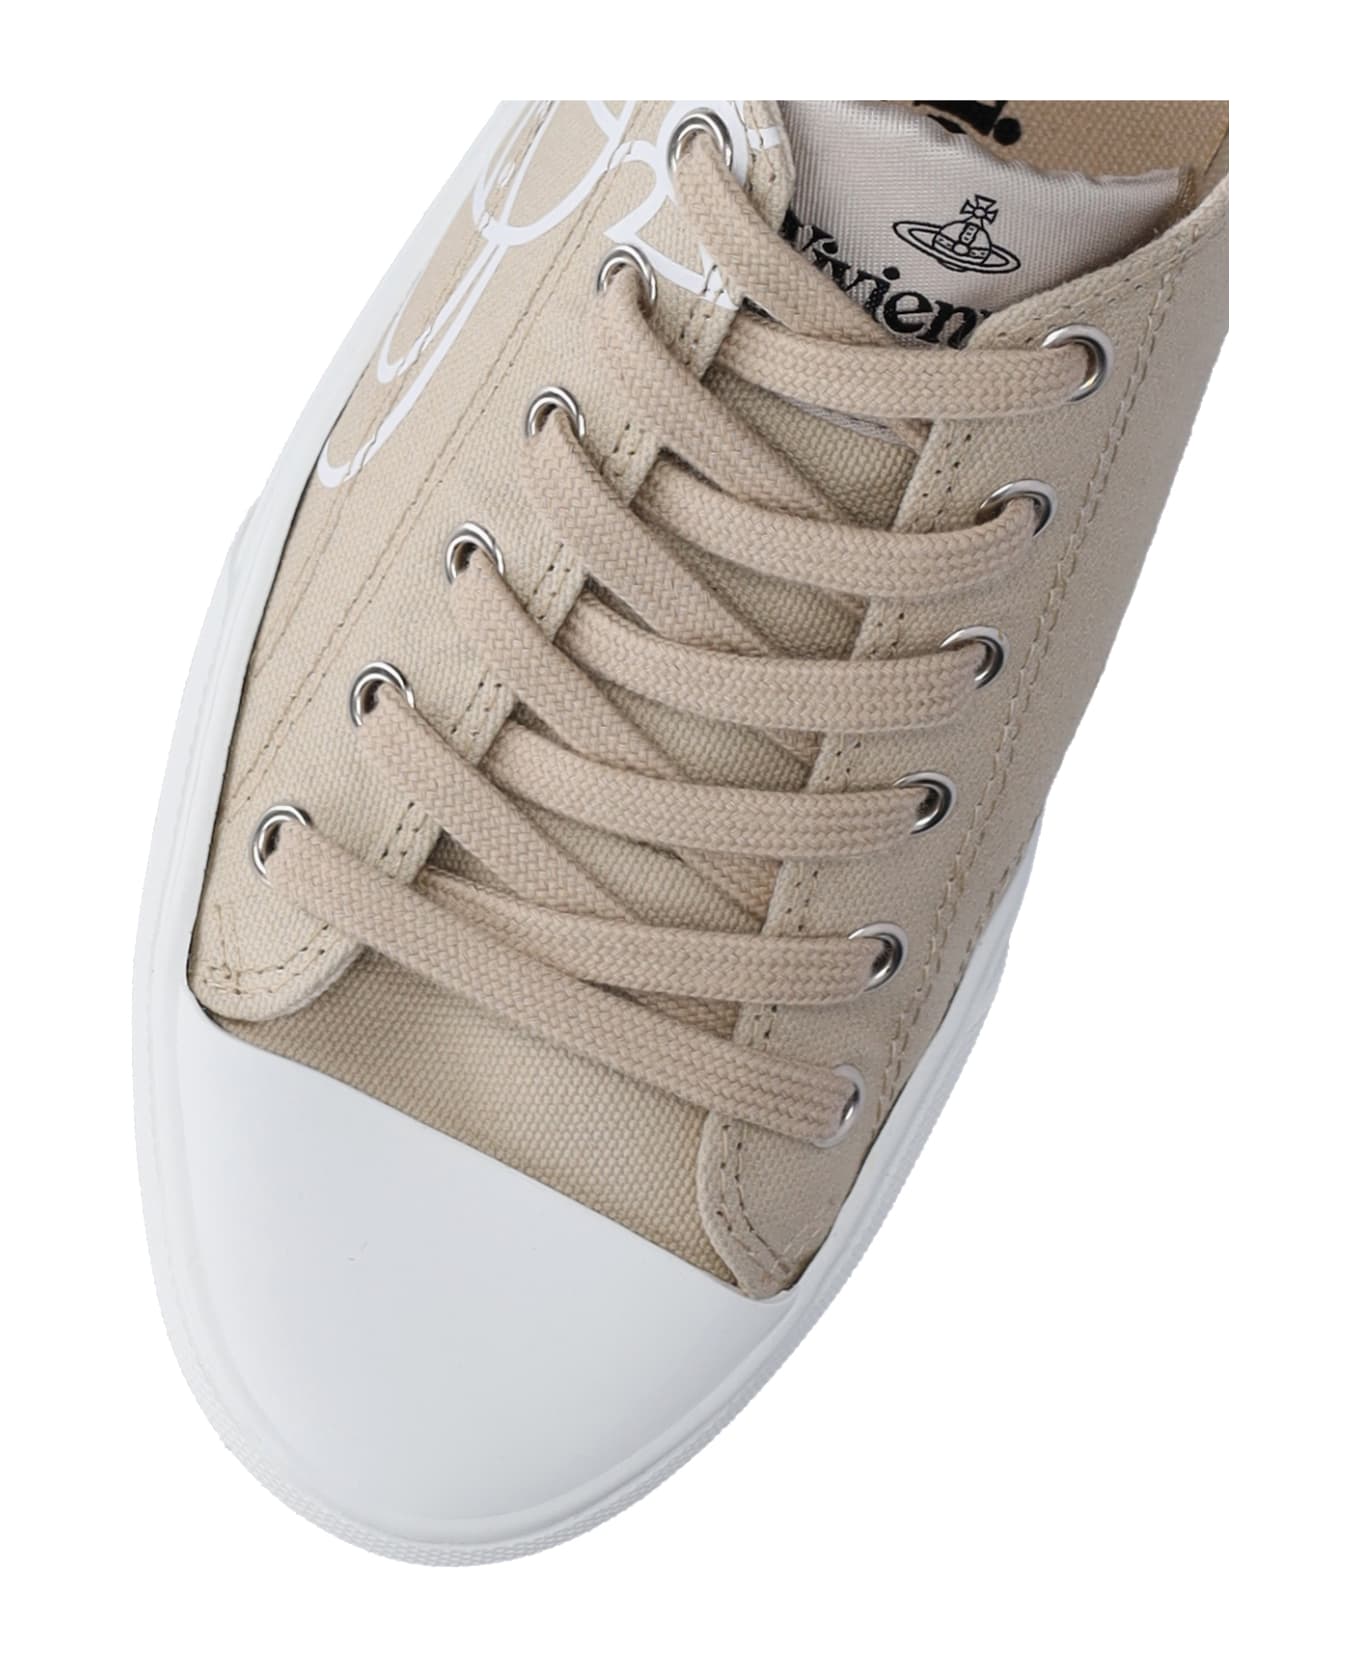 Vivienne Westwood 'plimsoll Low Top 2.0' Sneakers - Beige スニーカー